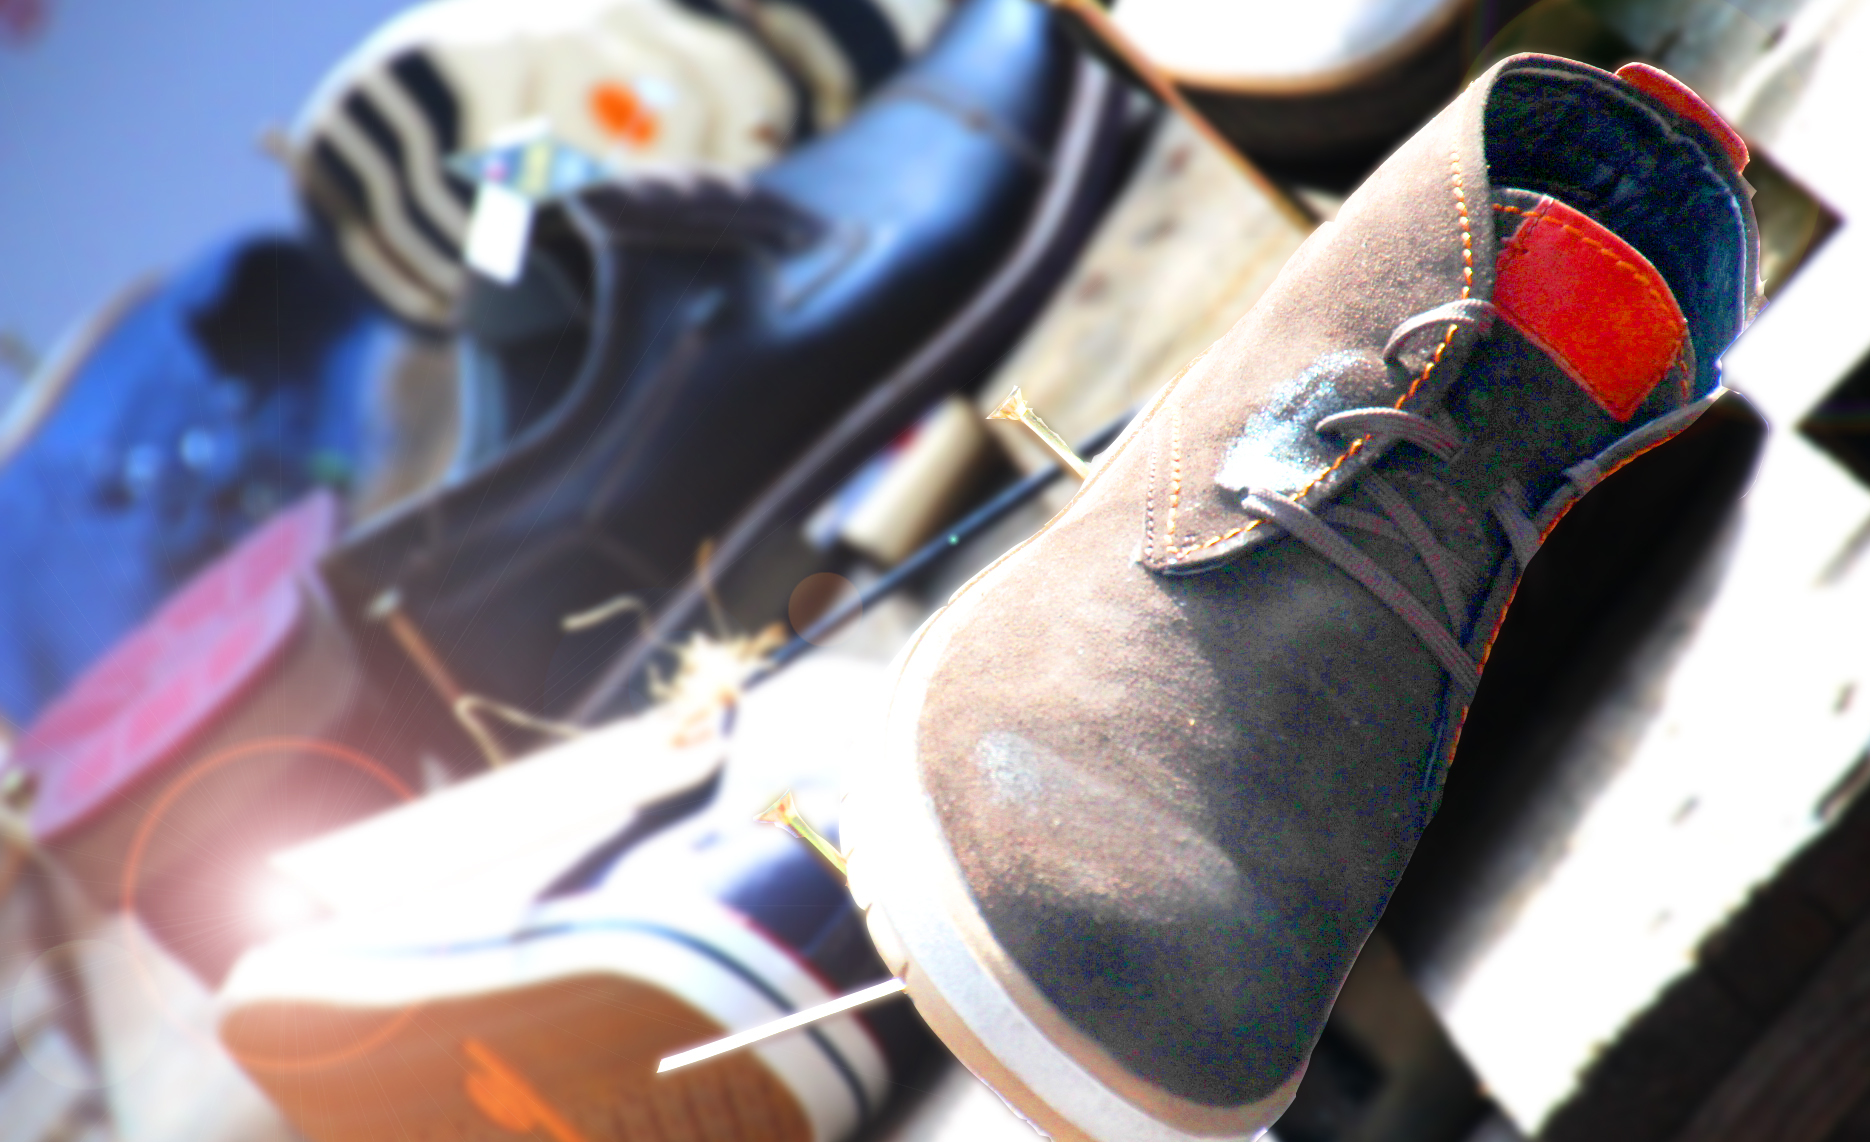 schuhplus - Schuhe in Übergrößen - Fachgeschäft für Schuhe in Übergröße. Innenaufnahme von schuhplus in 27313 Dörverden. Mehr unter www.schuhplus.com